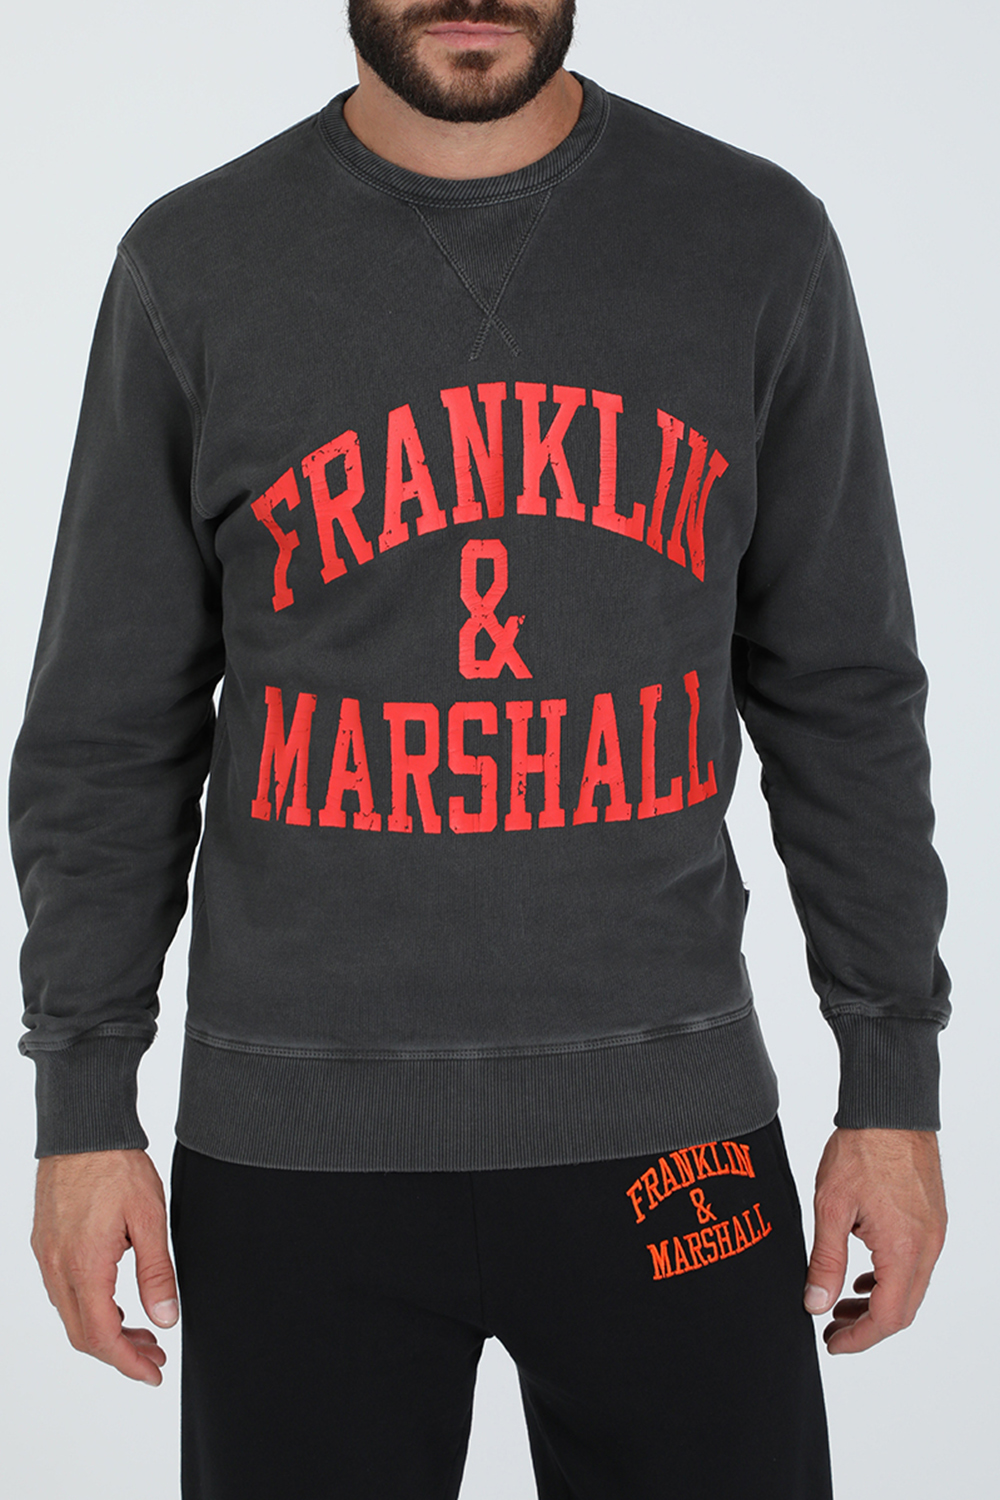 Ανδρικά/Ρούχα/Μπλούζες/Μακρυμάνικες FRANKLIN & MARSHALL - Ανδρική φούτερ μπλούζα FRANKLIN & MARSHALL OLD GARMENT DYED γκρι